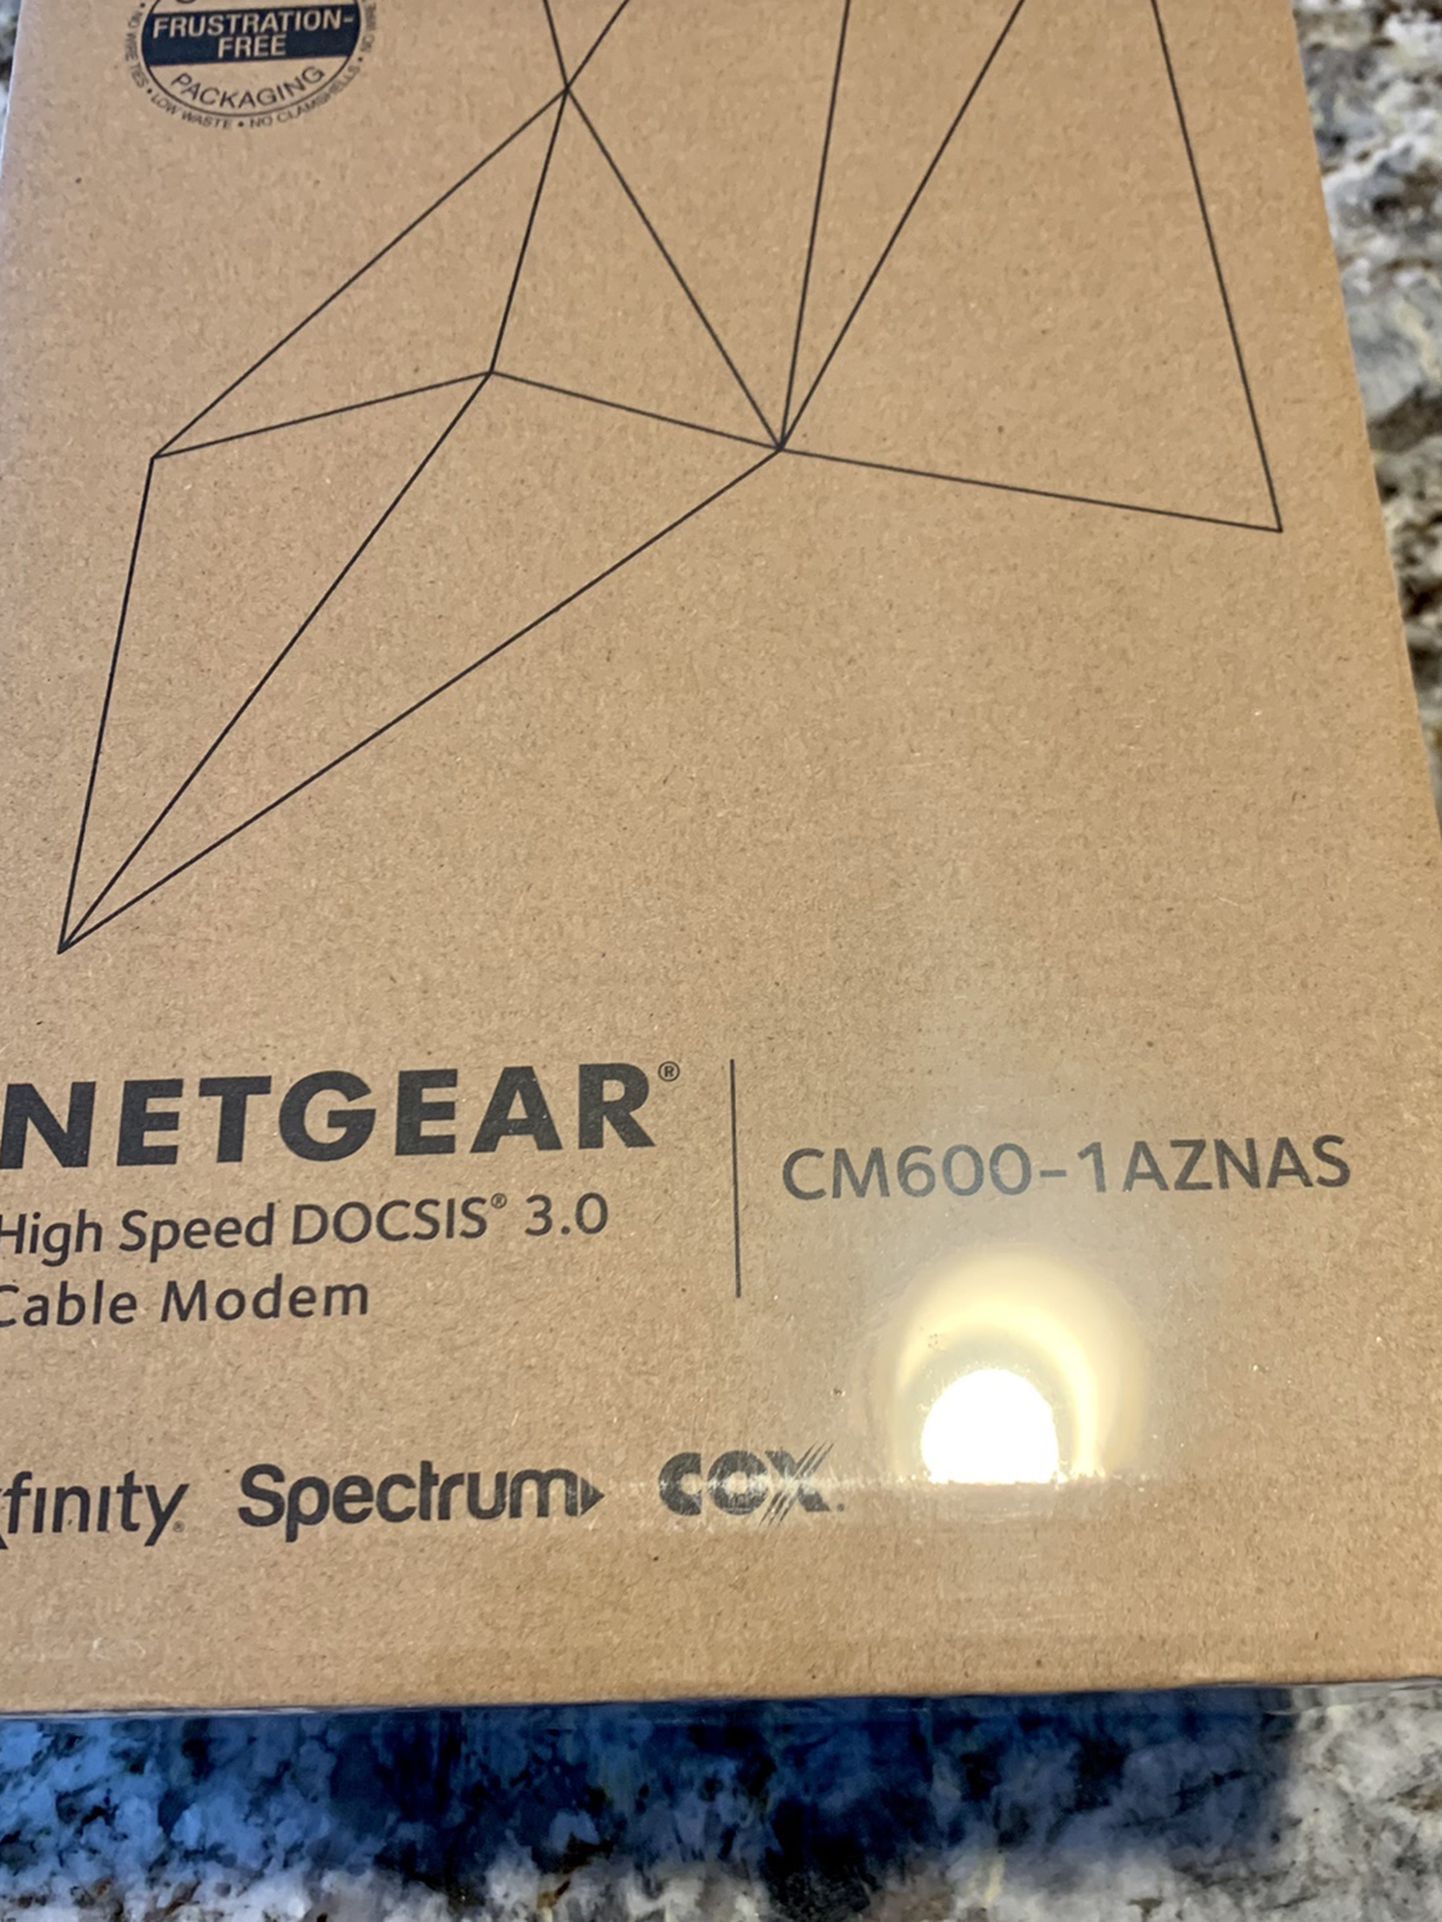 Netgear High Speed DOCSISS 3.0 Cable Modem Cm600